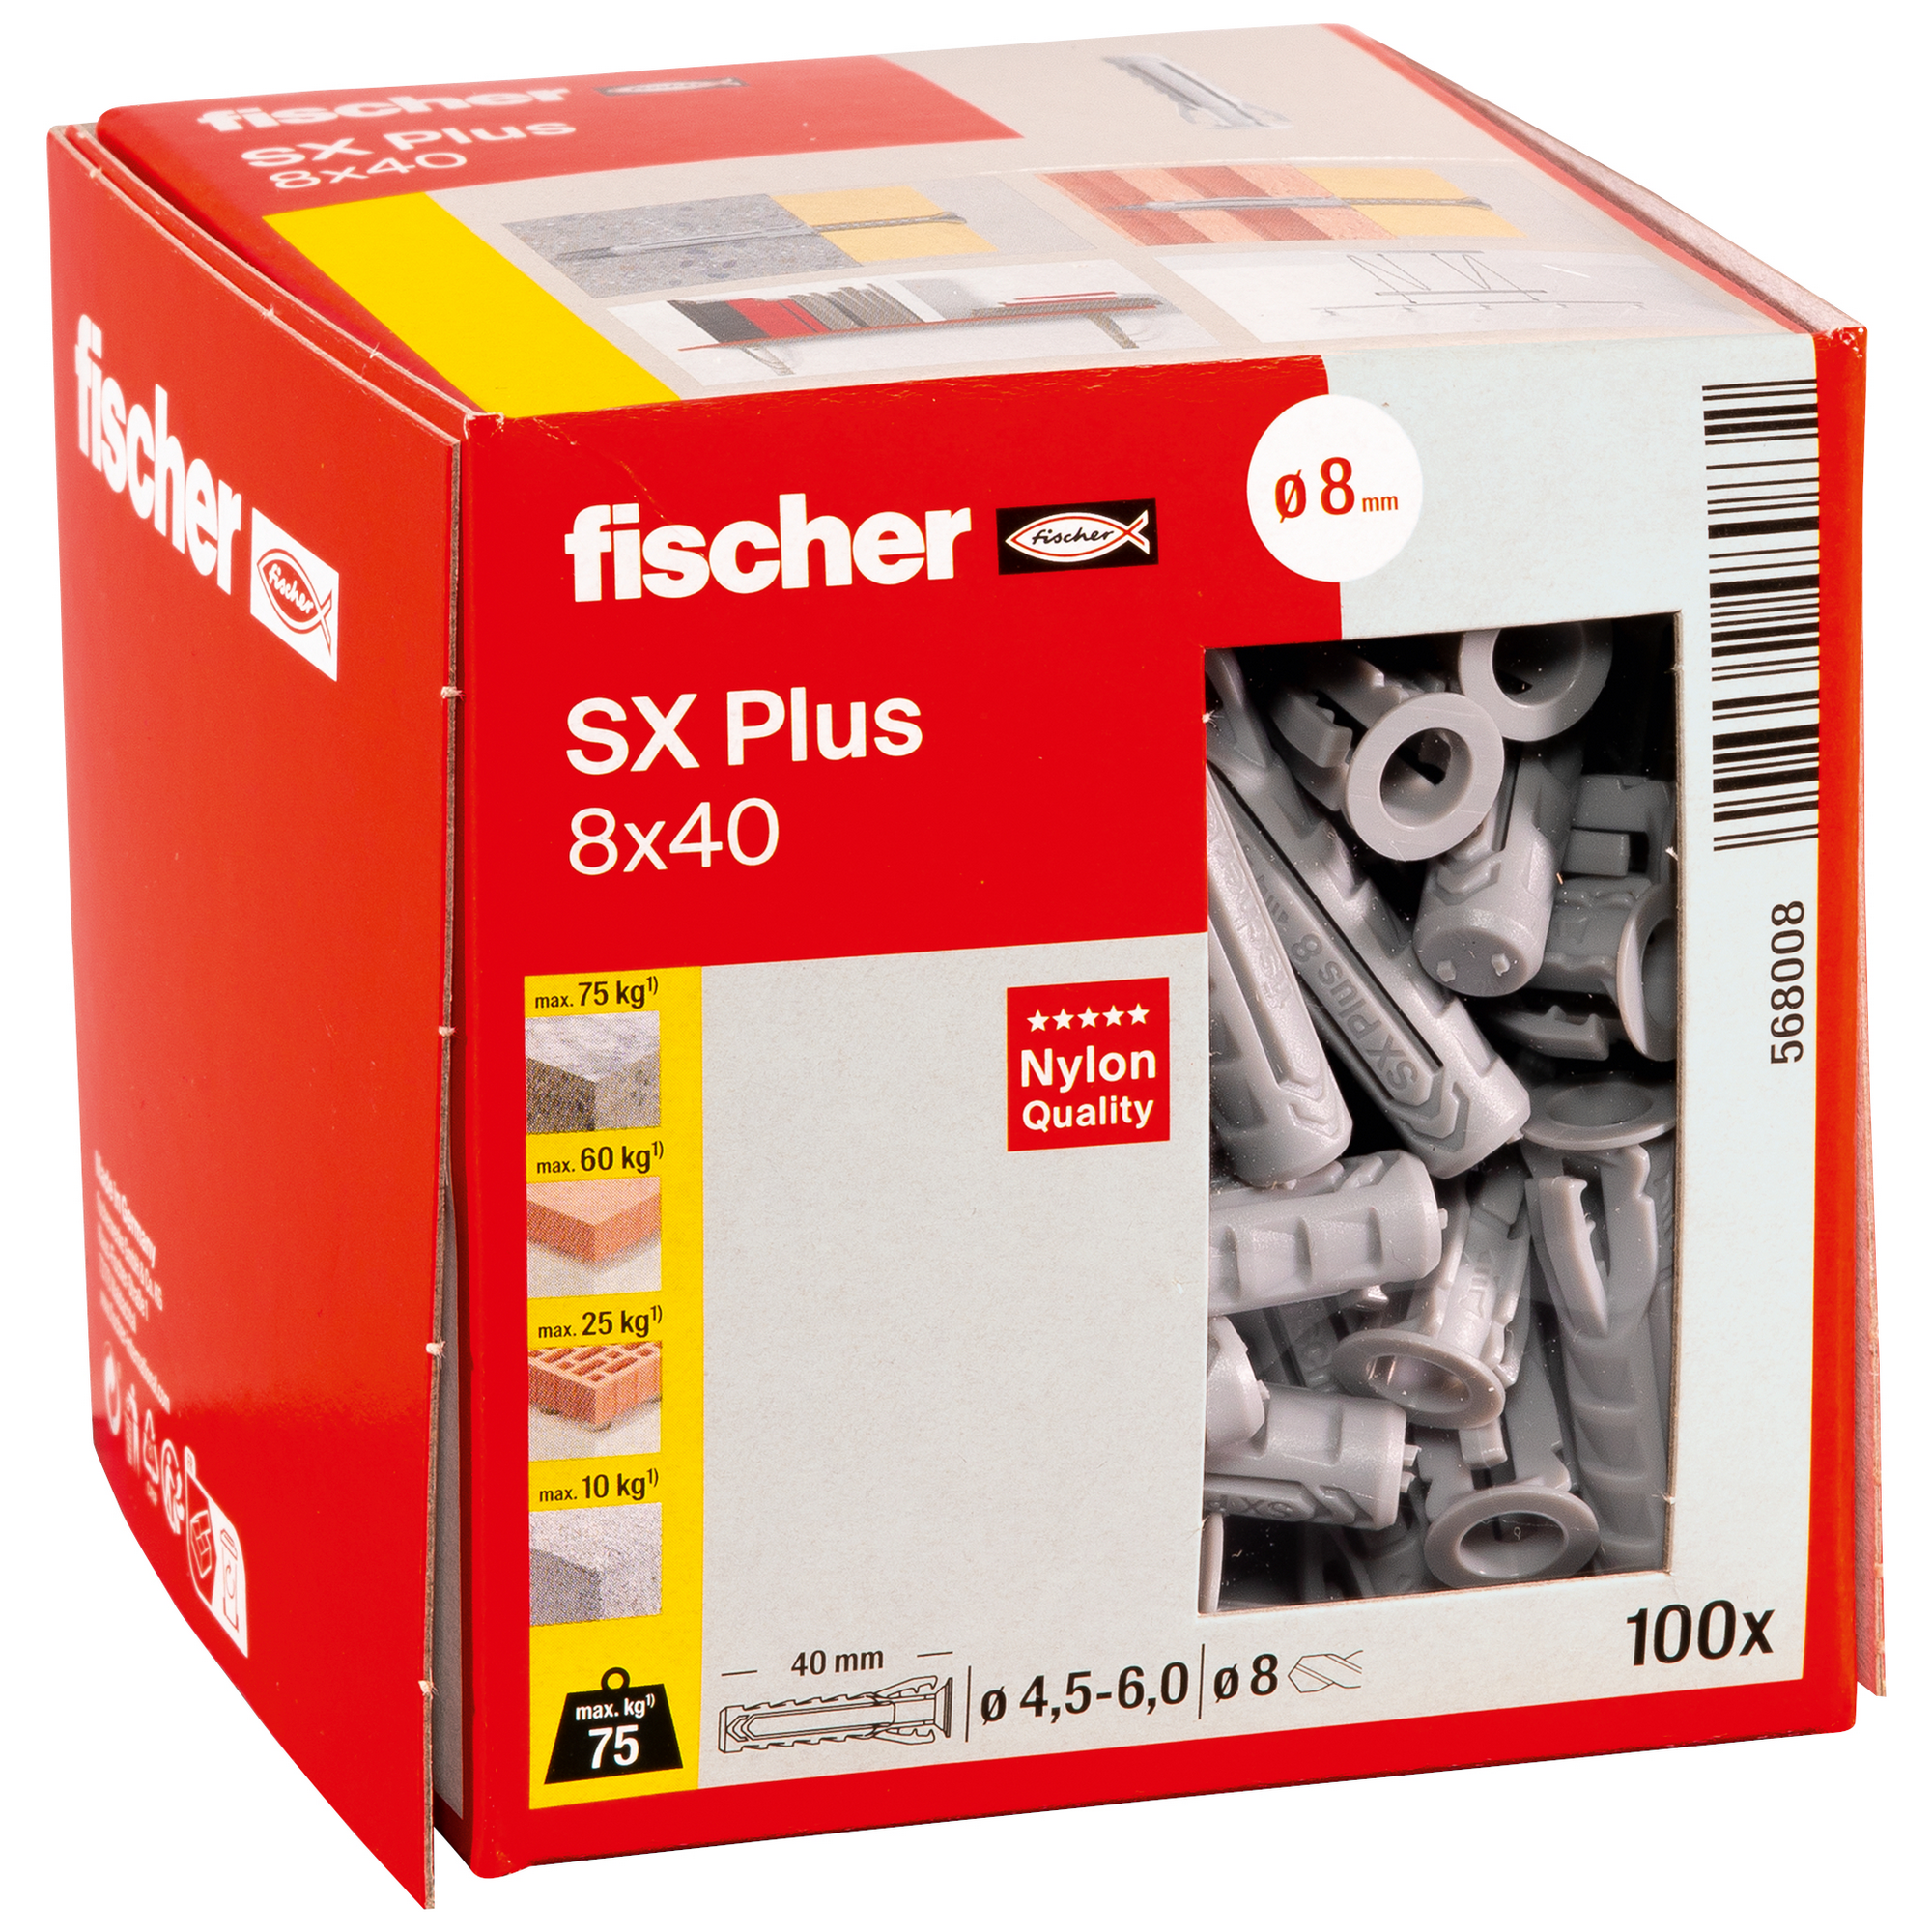 Spreizdübel-Set 'SX Plus' Ø 8 x 40 mm, 100-teilig + product picture